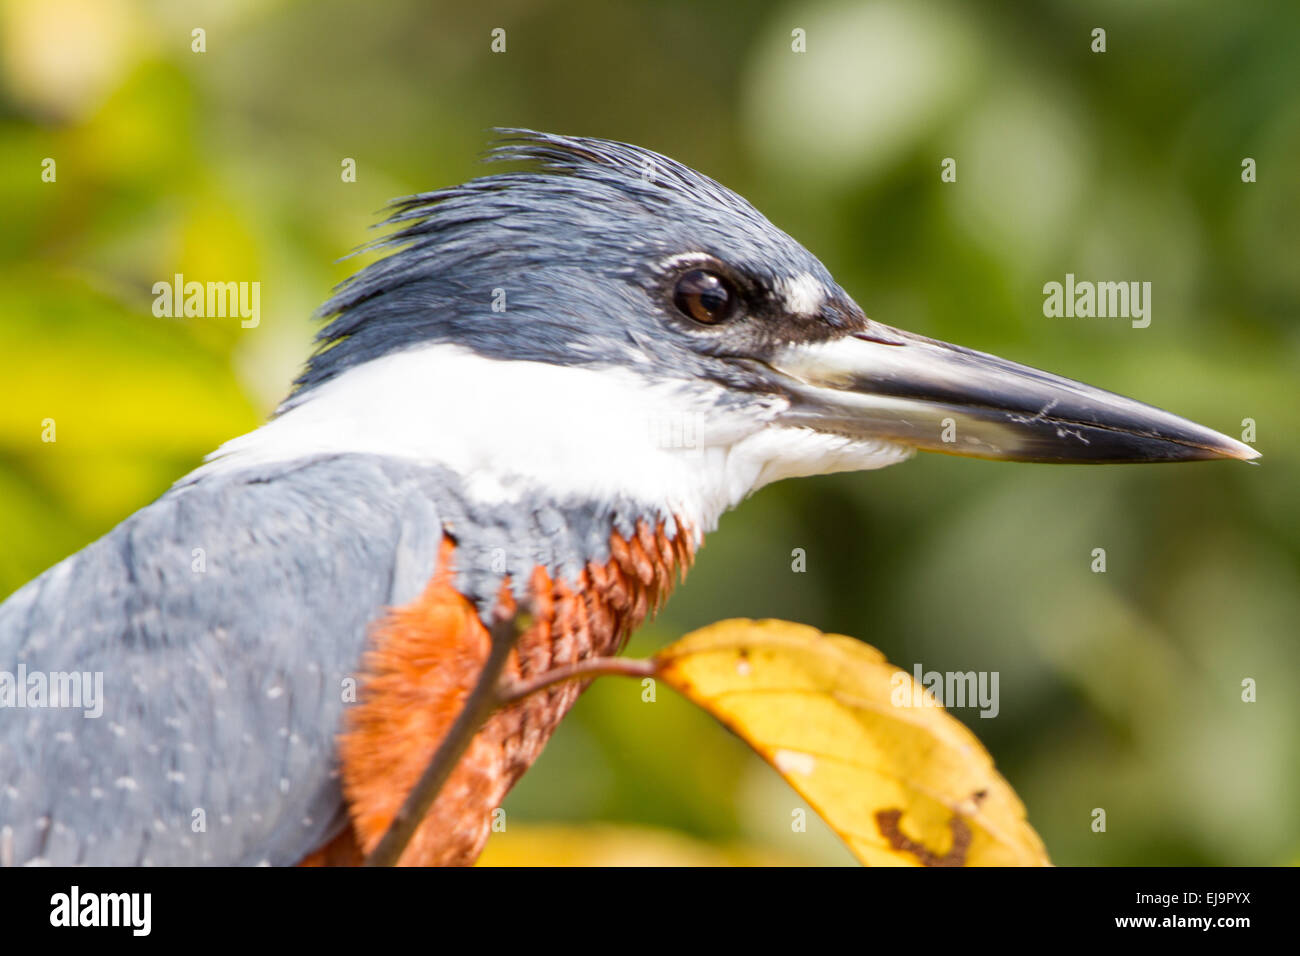 Ringed kingfisher Stock Photo - Alamy